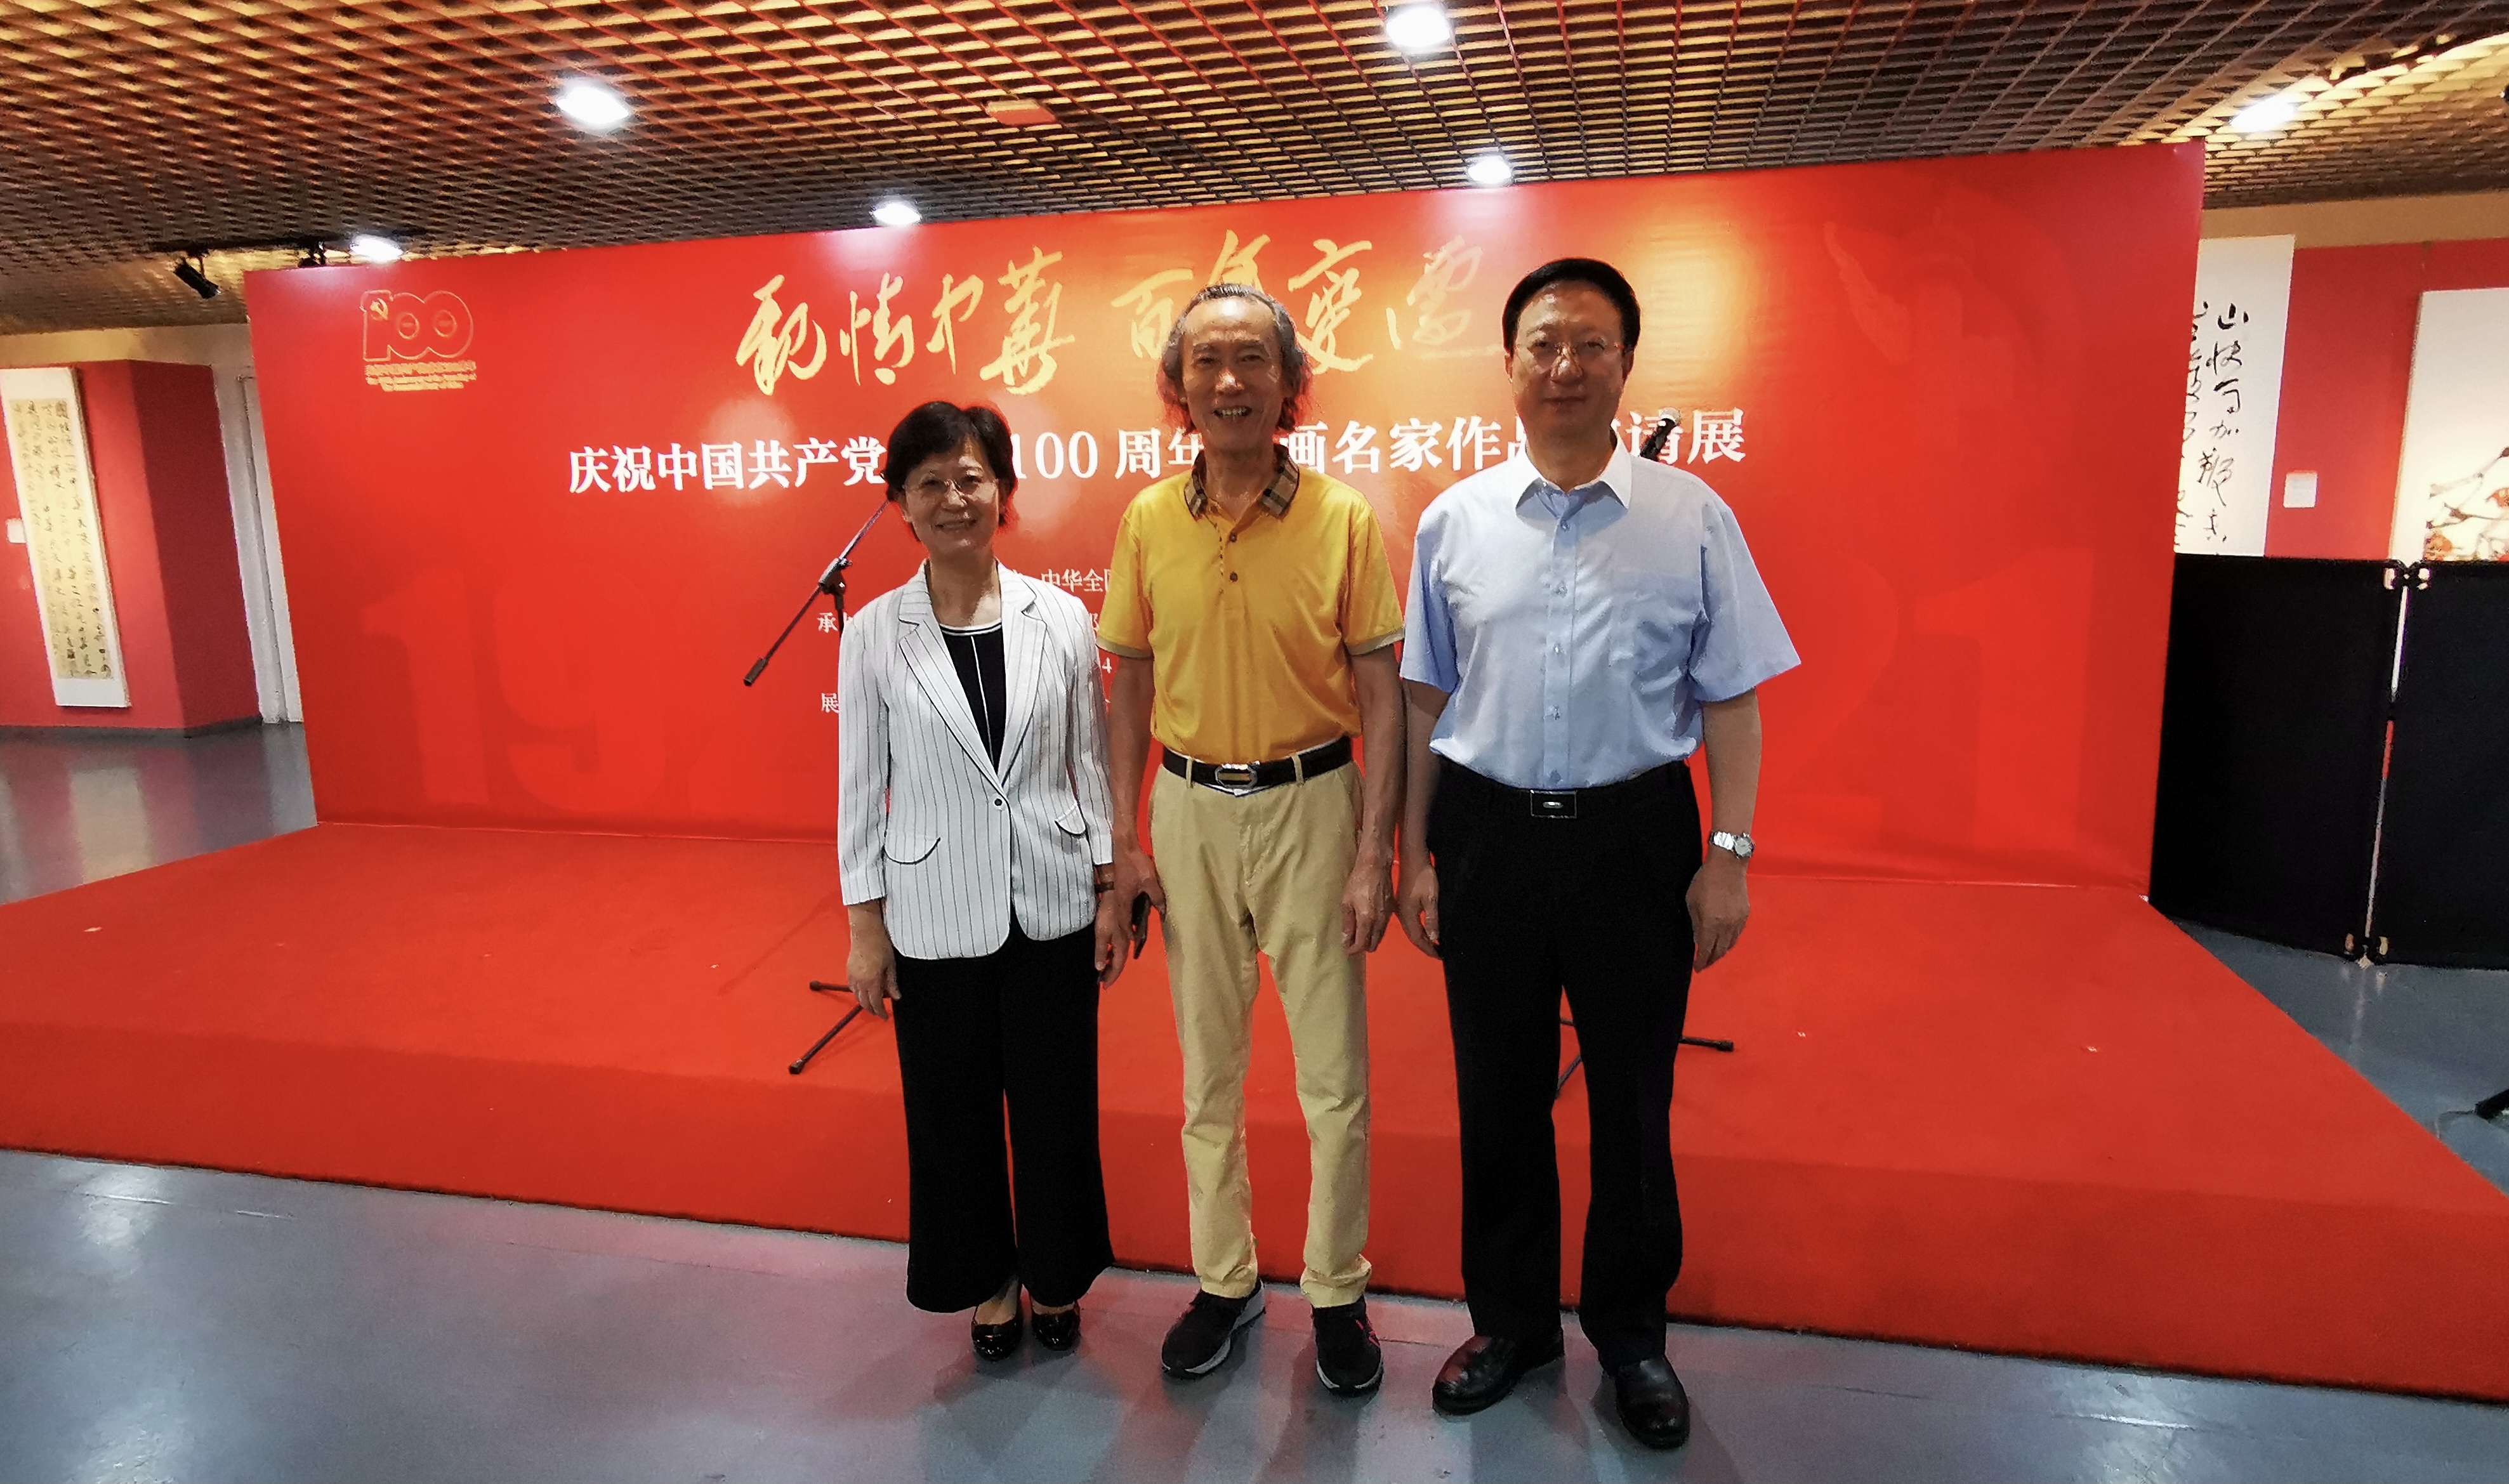 中国标准草书学社与中国侨联在北京联合举办庆祝中国共产党成立100周年书画名家邀请展